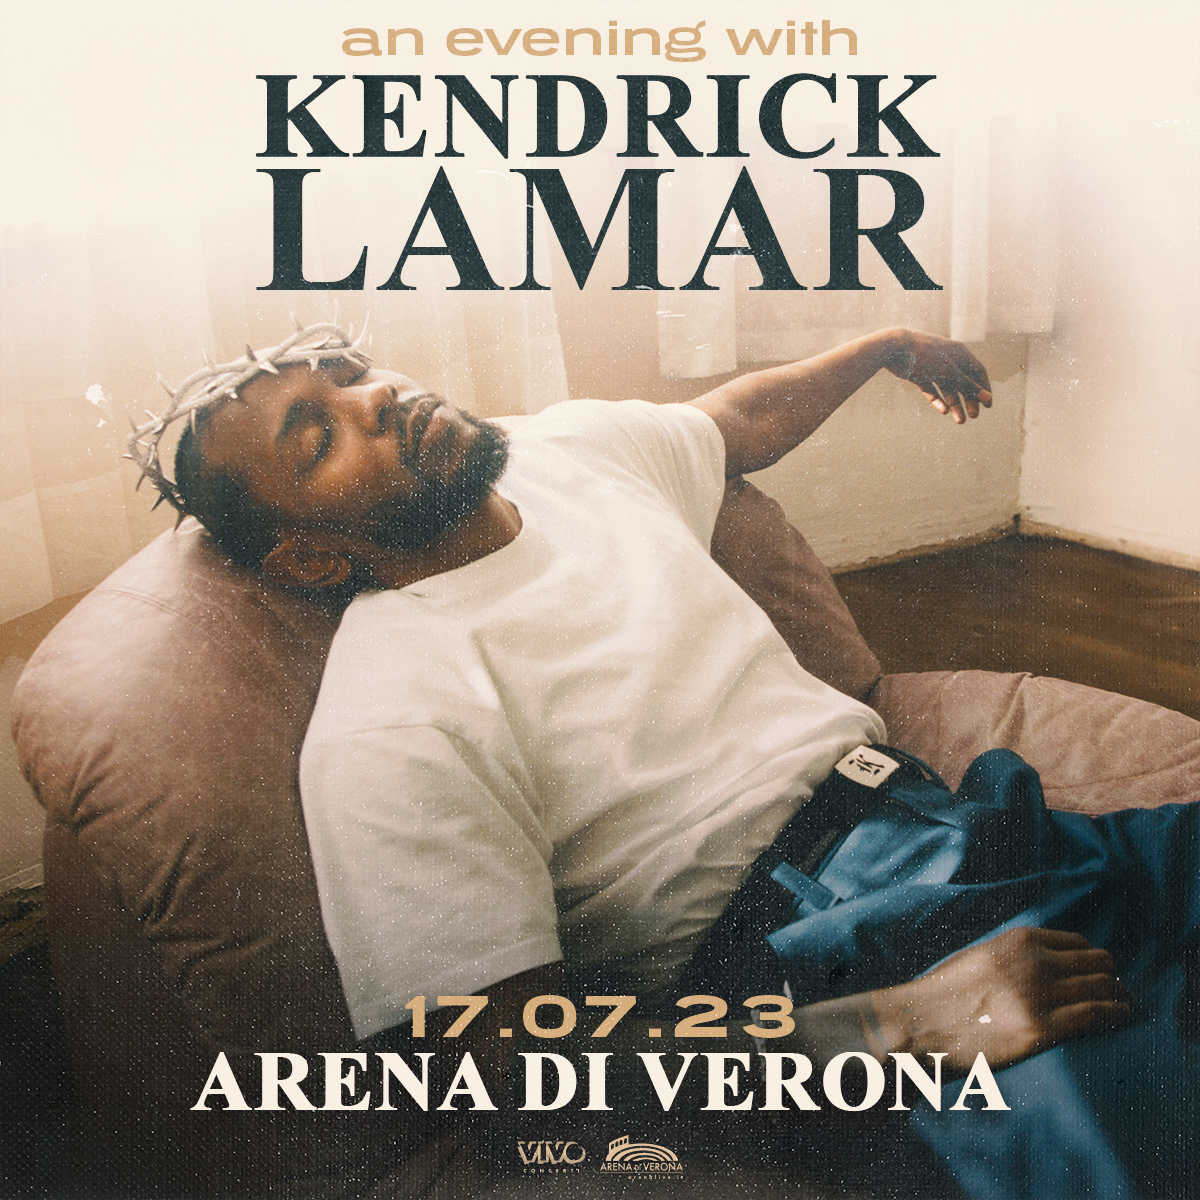 Kendrick Lamar nuovo album e tour - immagini